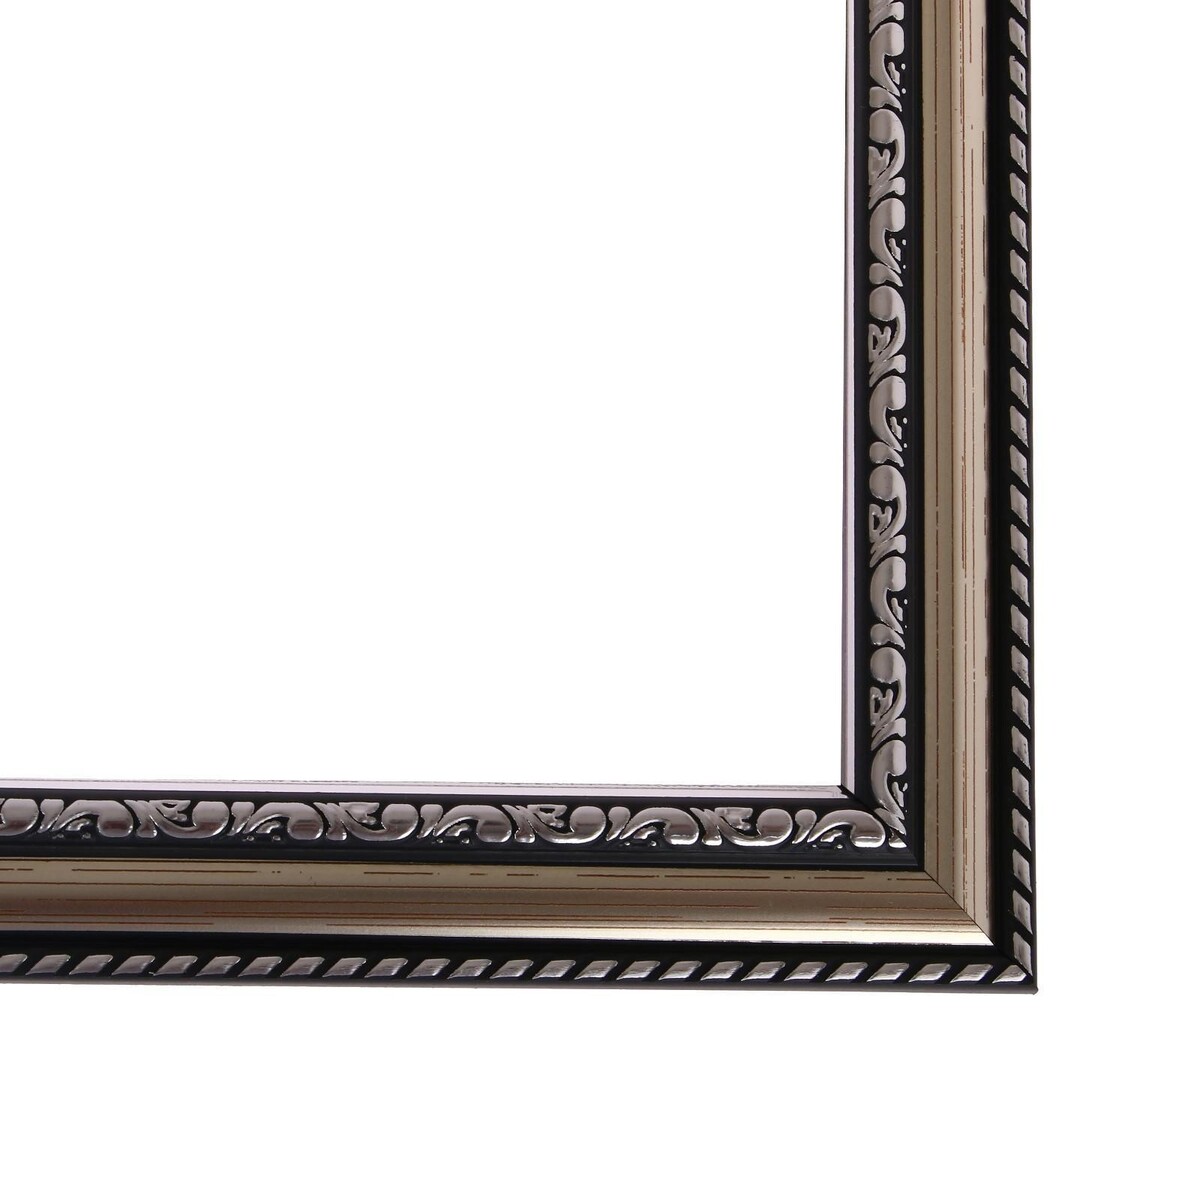 Рама для картин (зеркал) 21 х 30 х 2,8 см, пластиковая, calligrata 6448, серебристый Calligrata, цвет черный 010780840 - фото 4